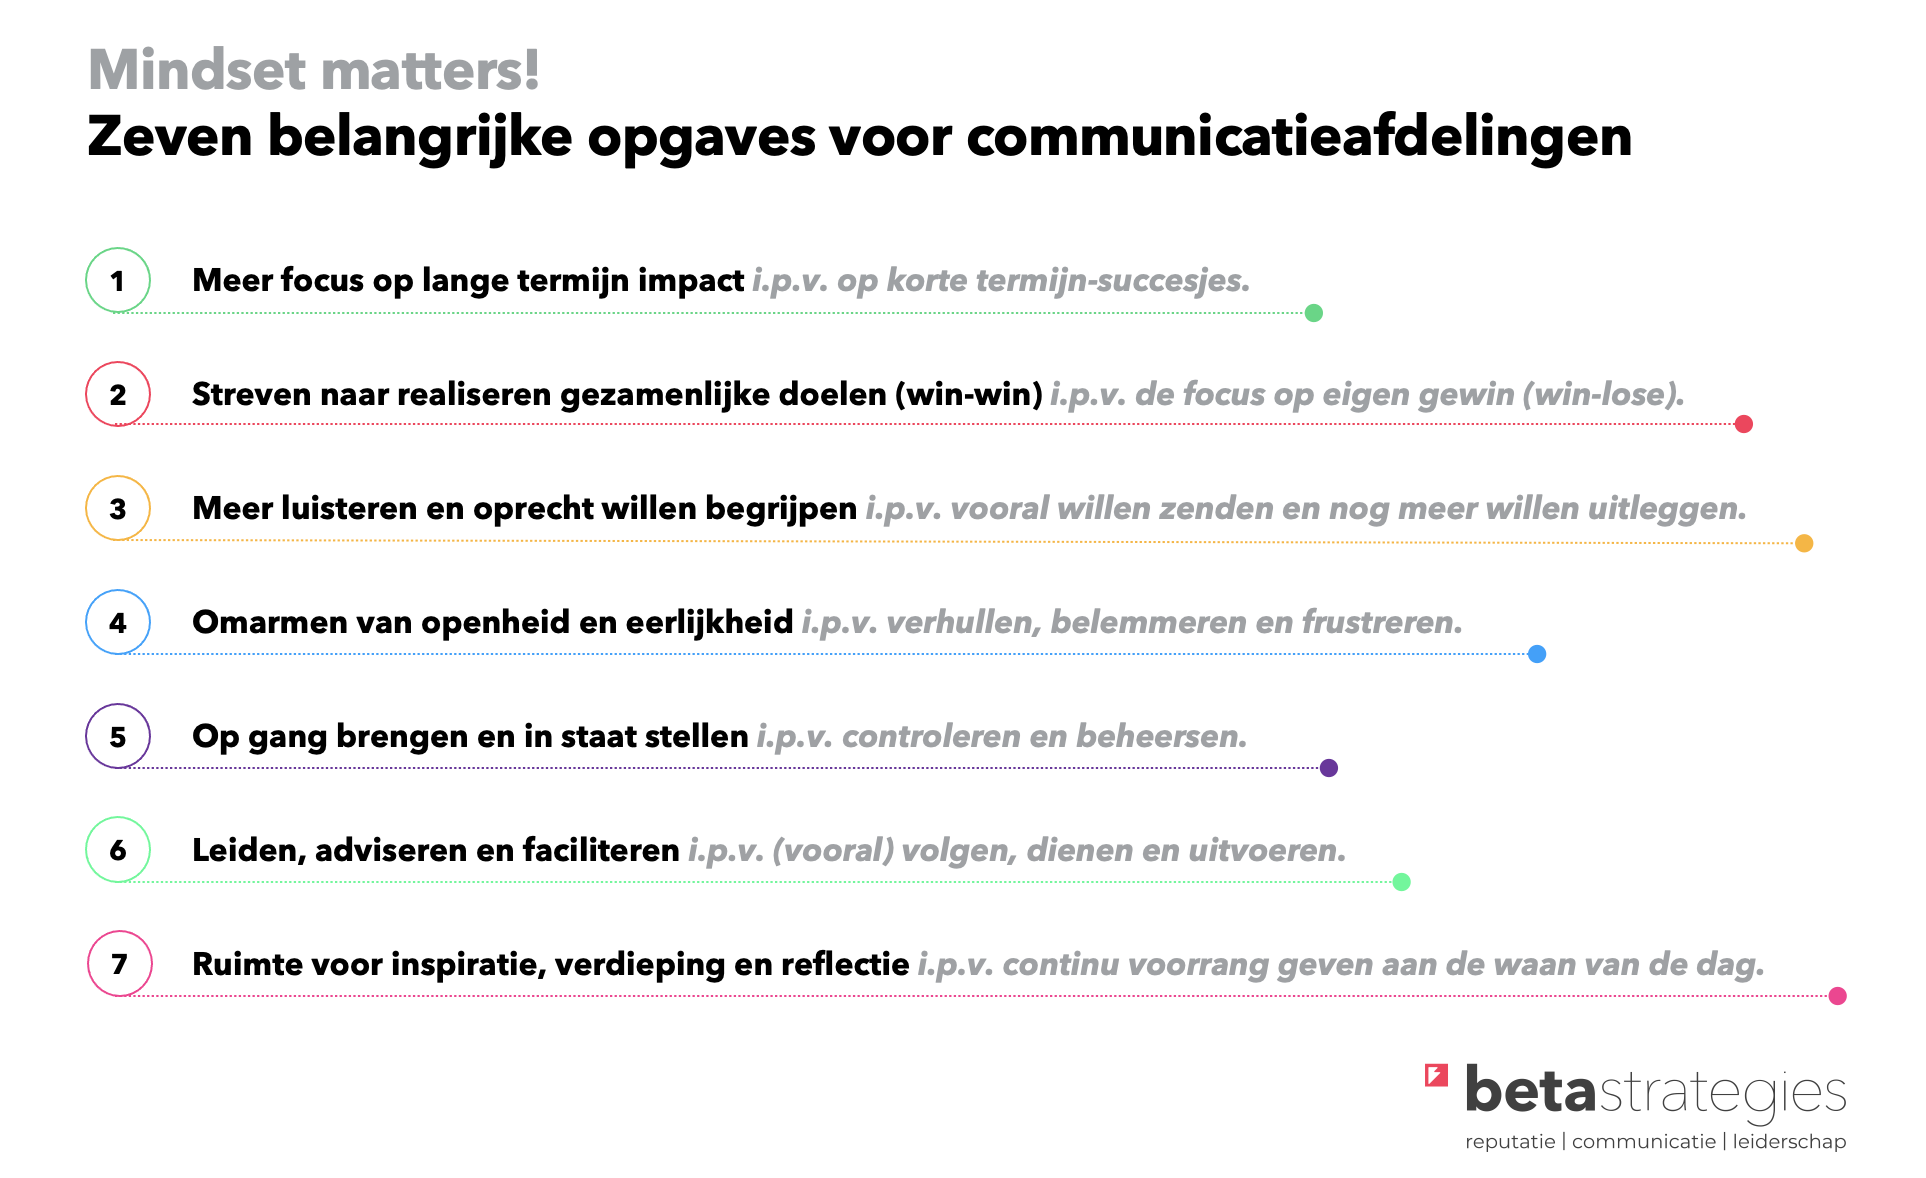 Opgaves communicatieafdelingen
communicatieafdeling
impact
communicatie
strategie
Beta Strategies
Frank Körver